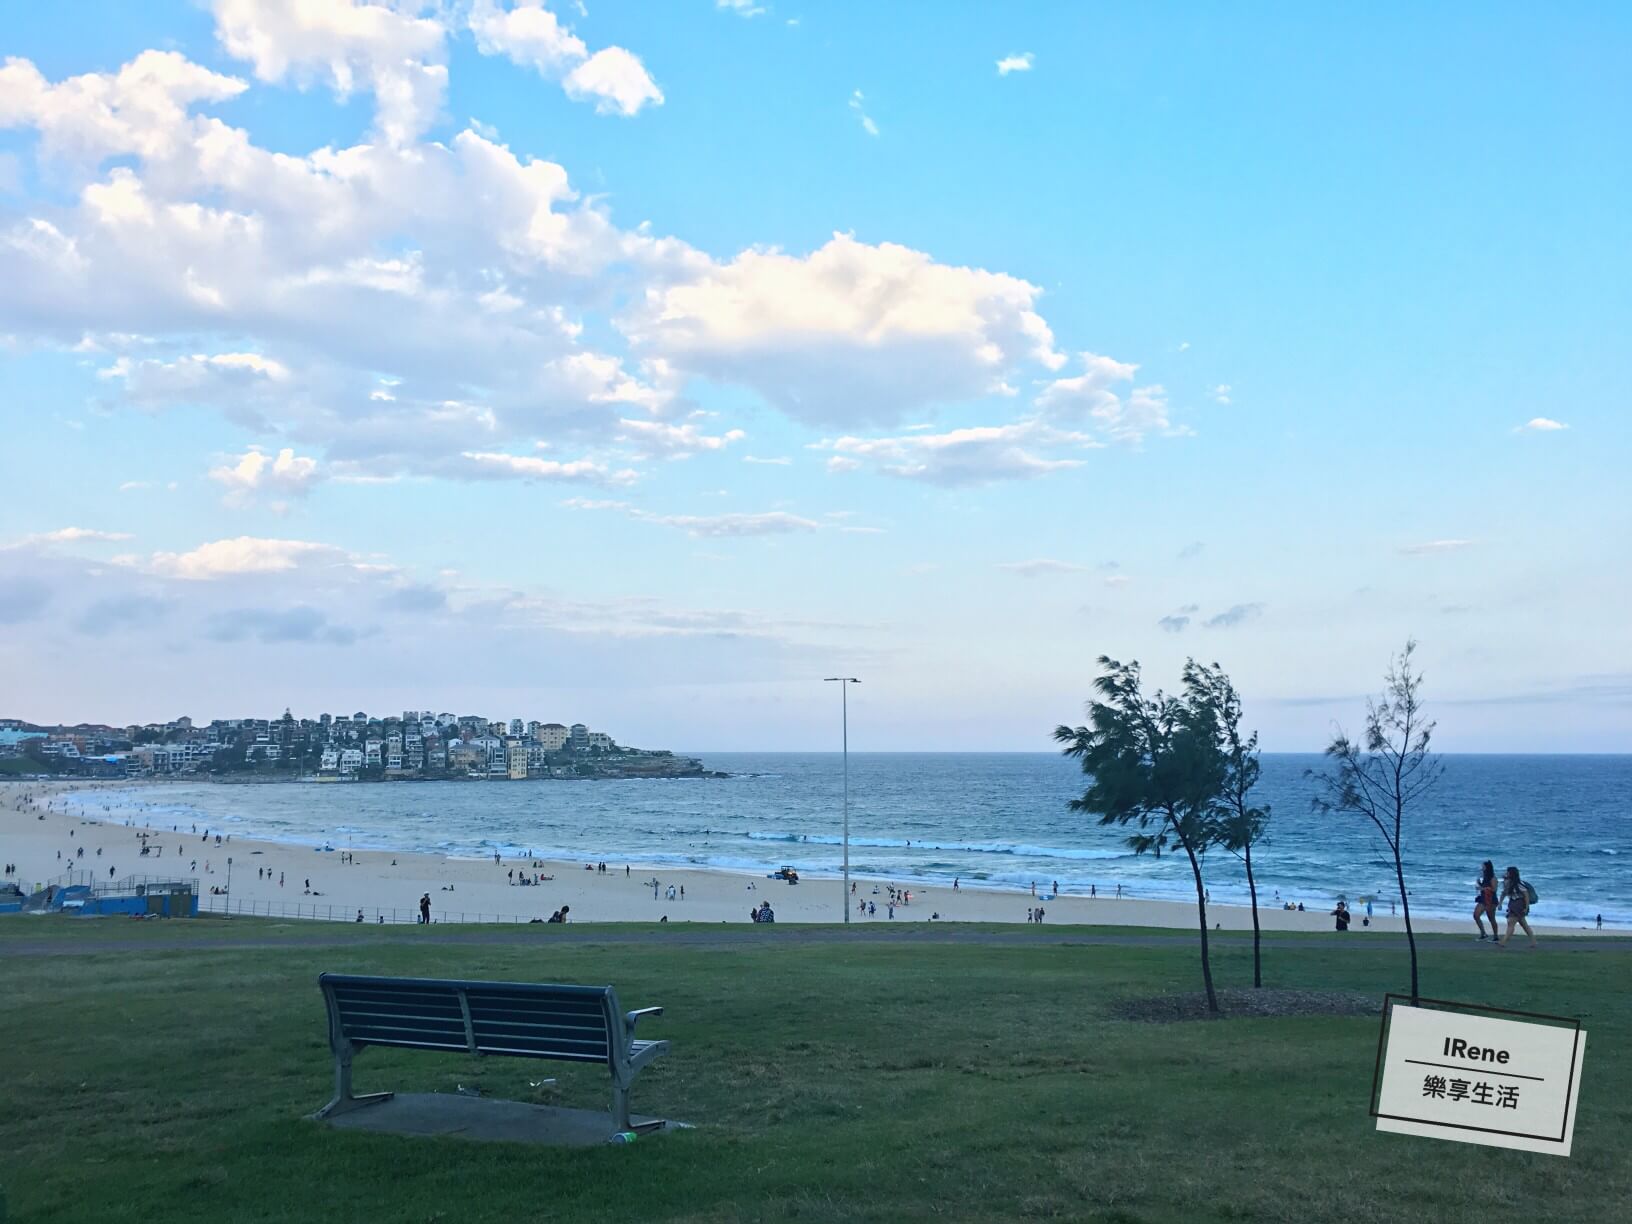 雪梨景點推薦- Bondi Beach 邦代海灘 邦迪海灘